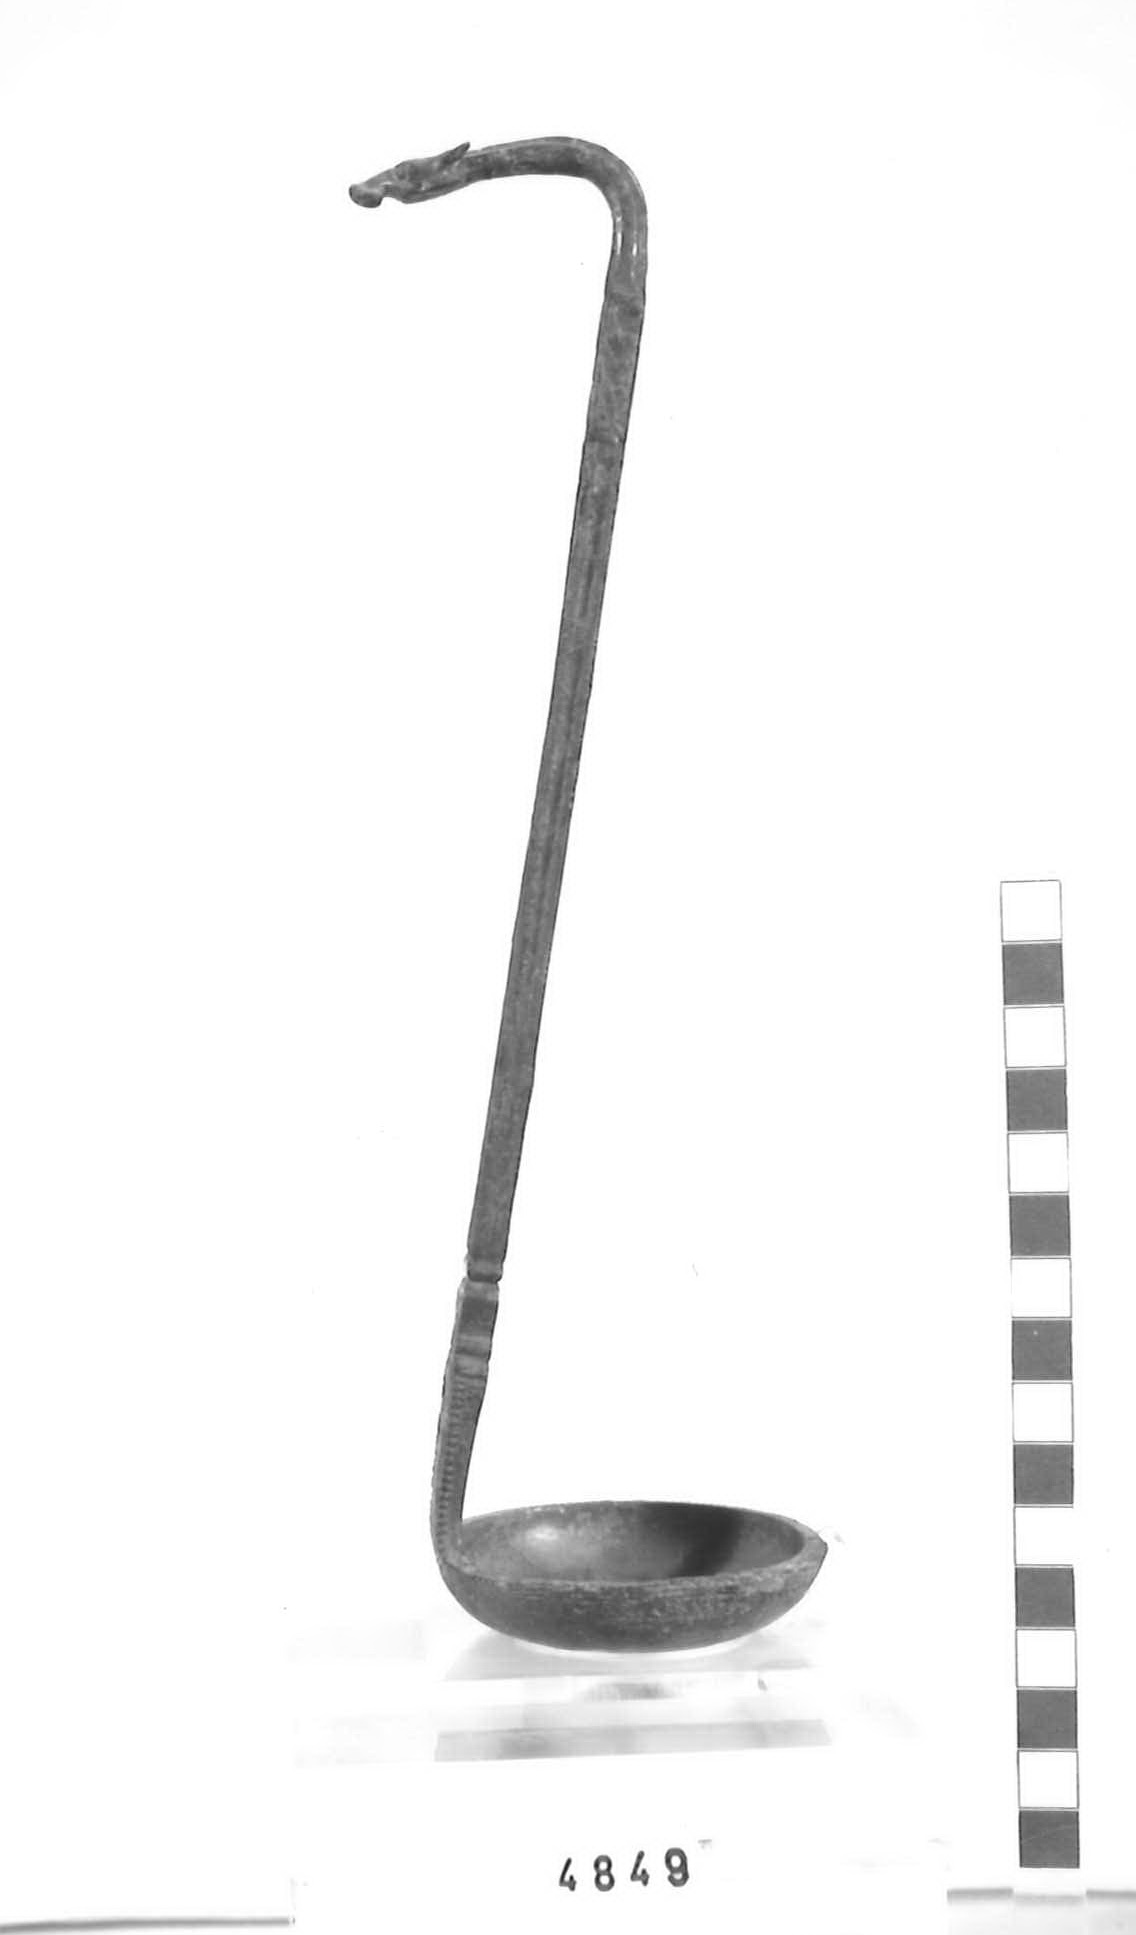 simpulum - Piceno V, produzione etrusca (sec. V a.C)